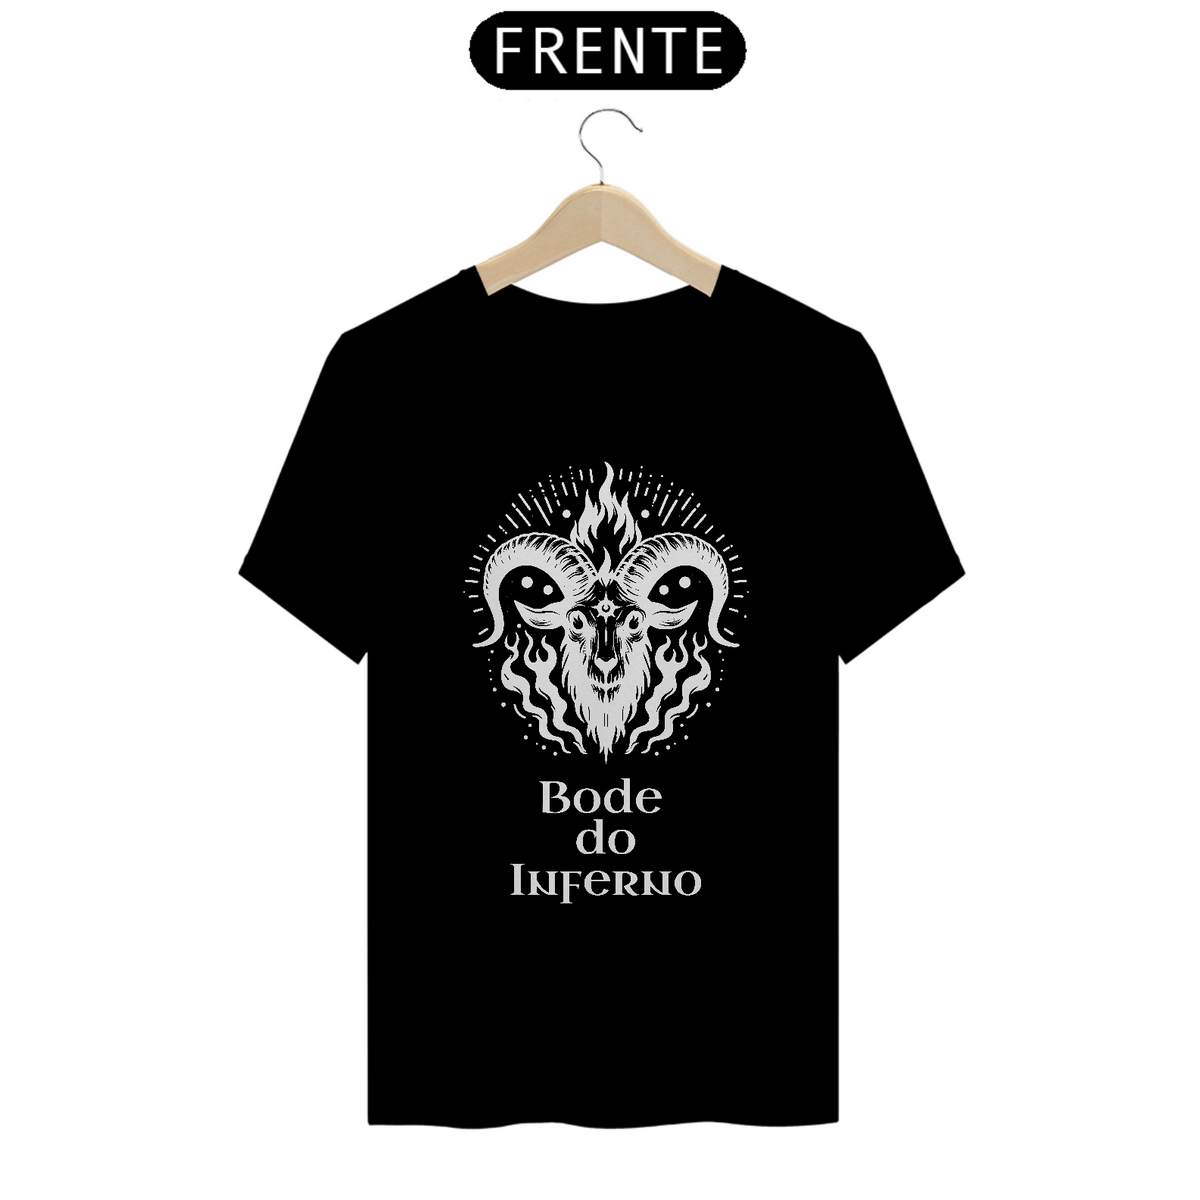 Nome do produto: Camiseta Loja Bode do Inferno com preço promocional